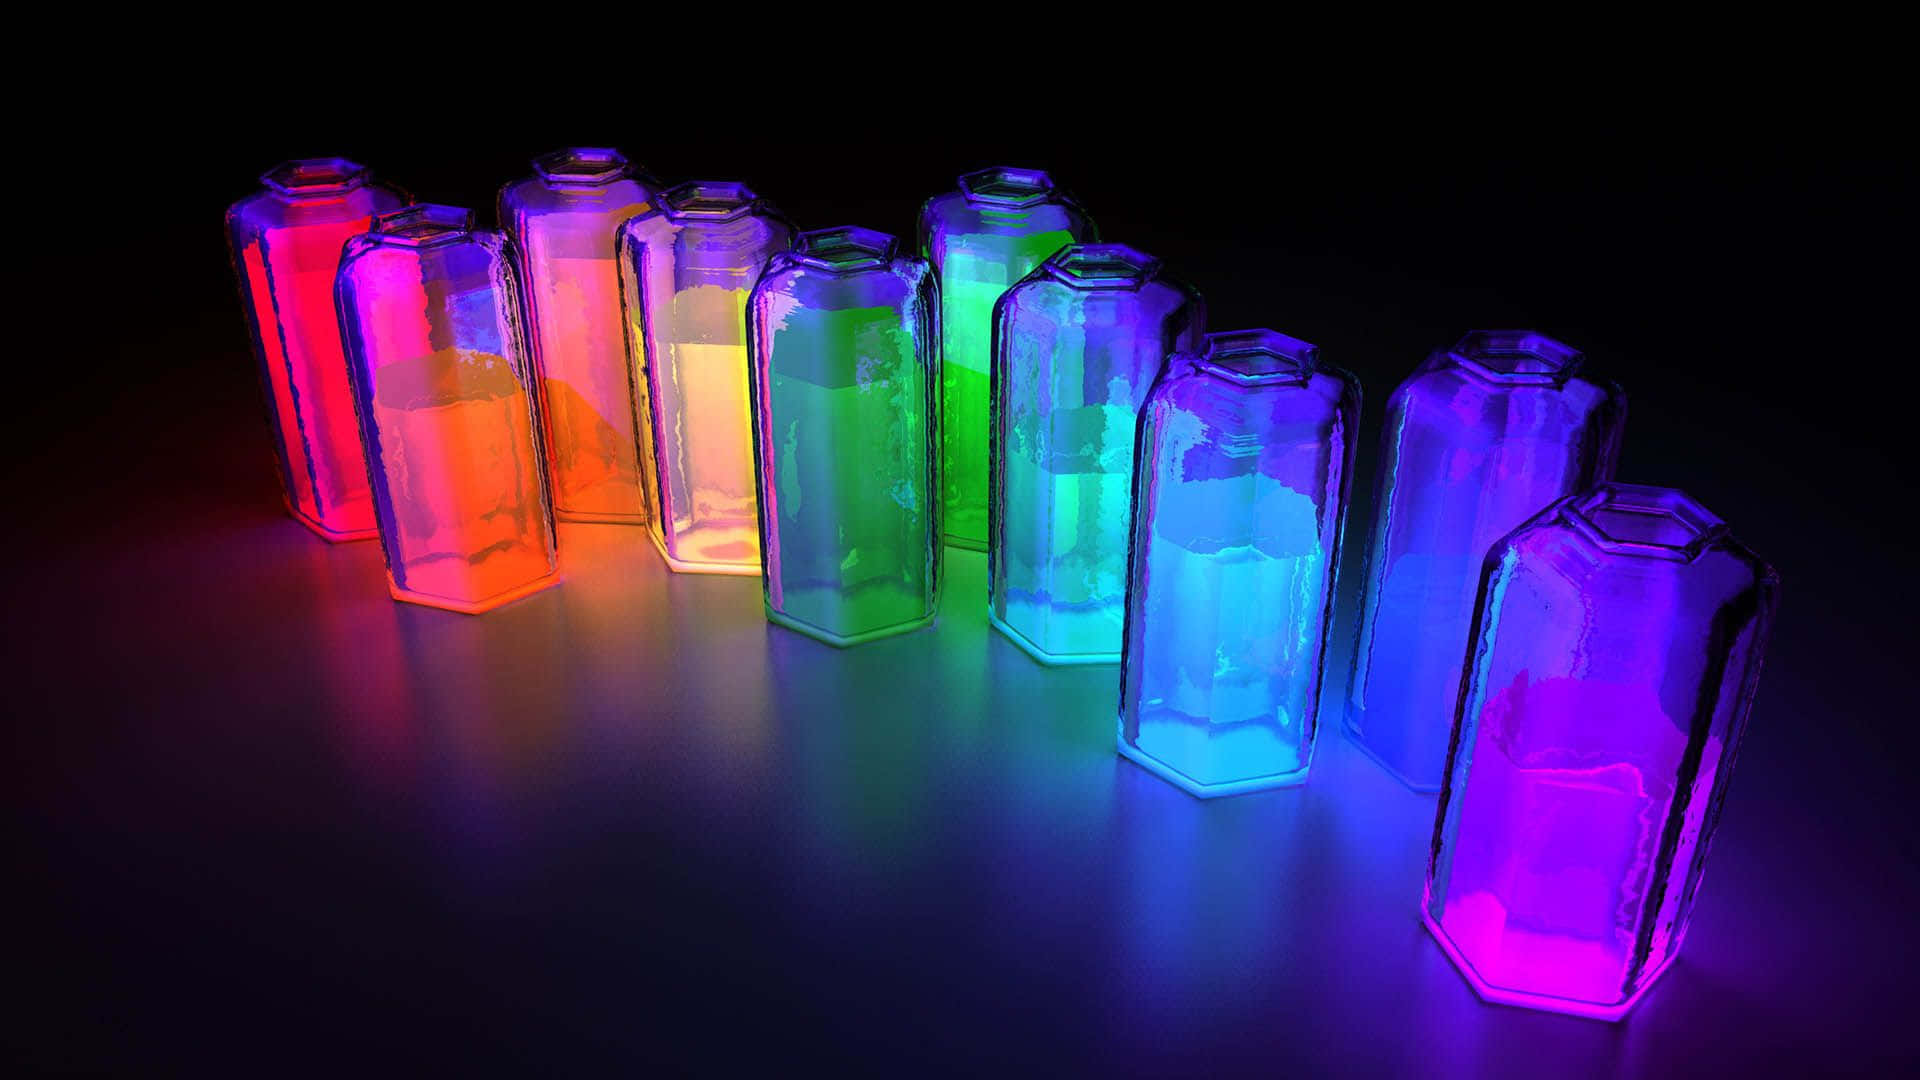 Umgrupo De Garrafas Coloridas Com Luzes Em Arco-íris. Papel de Parede